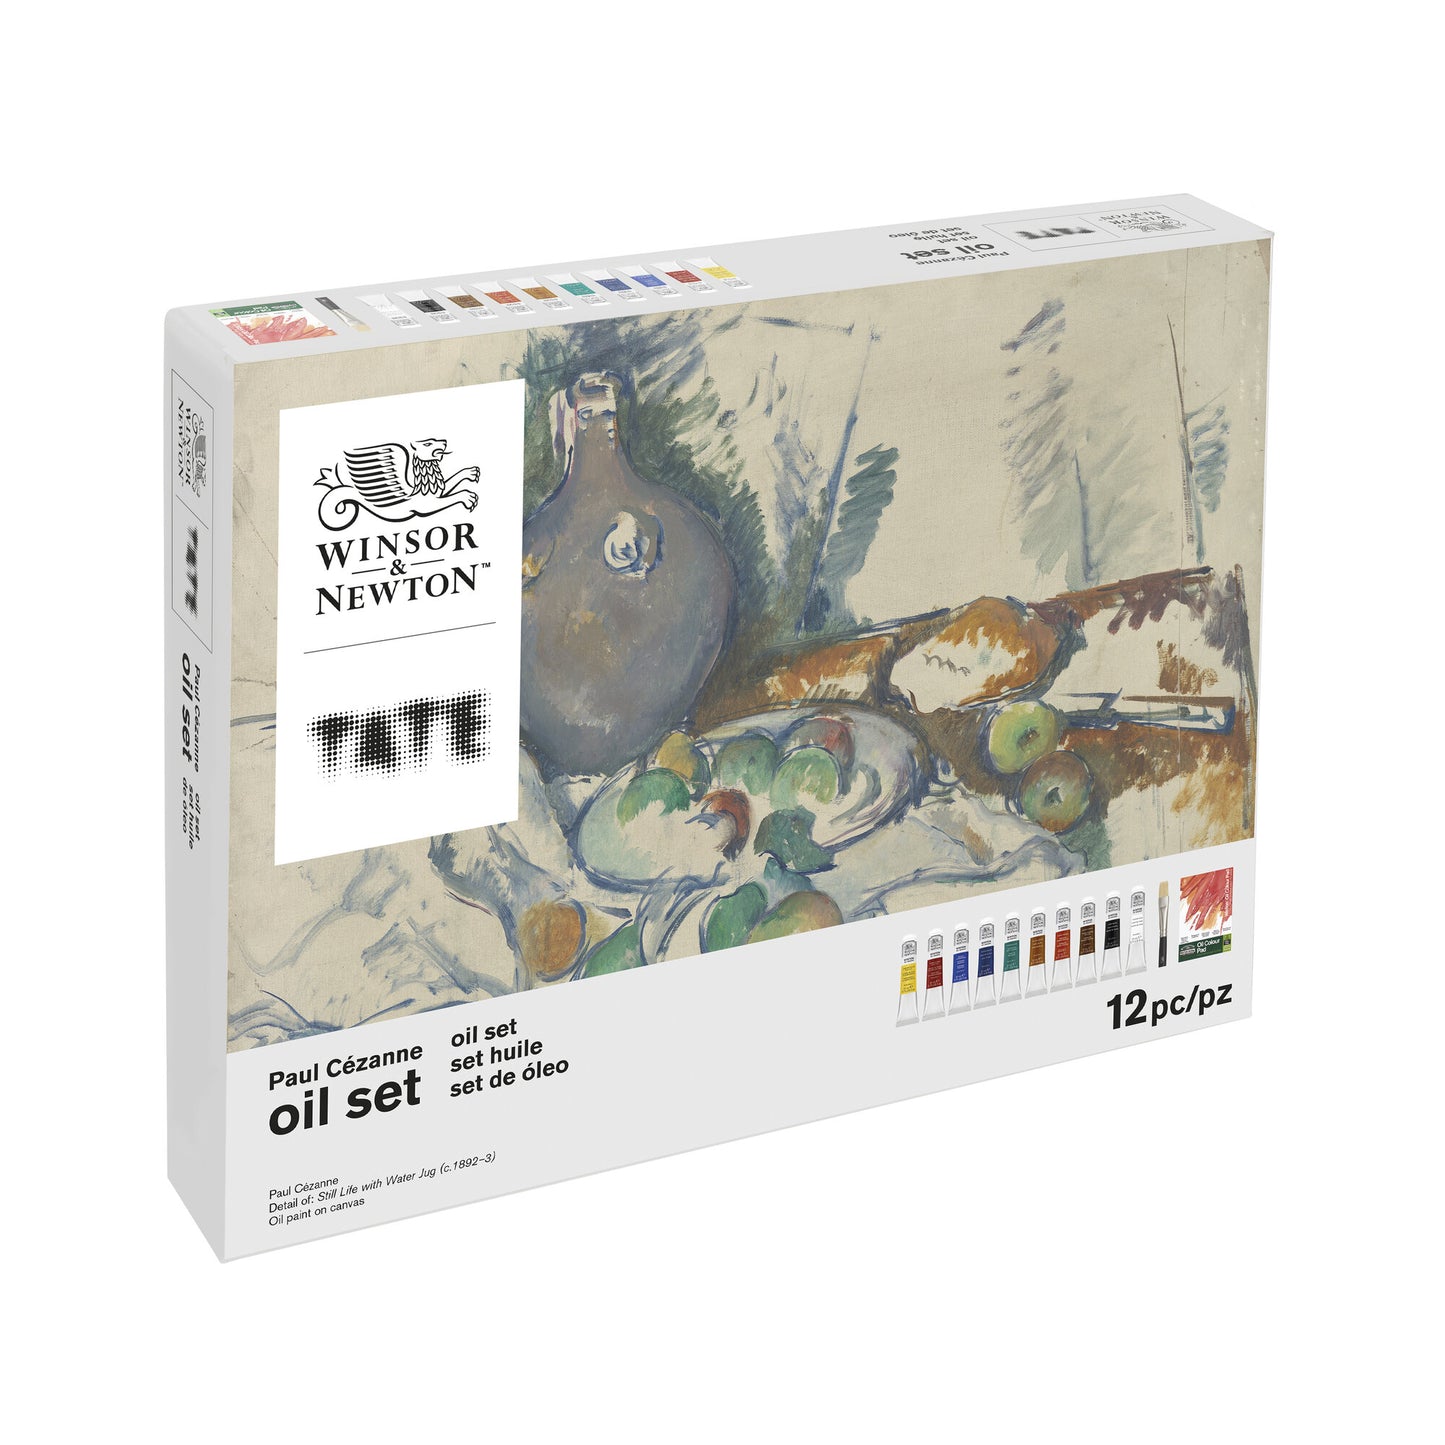 Winsor & Newton Tate -  Paul Cézanne Oil Set